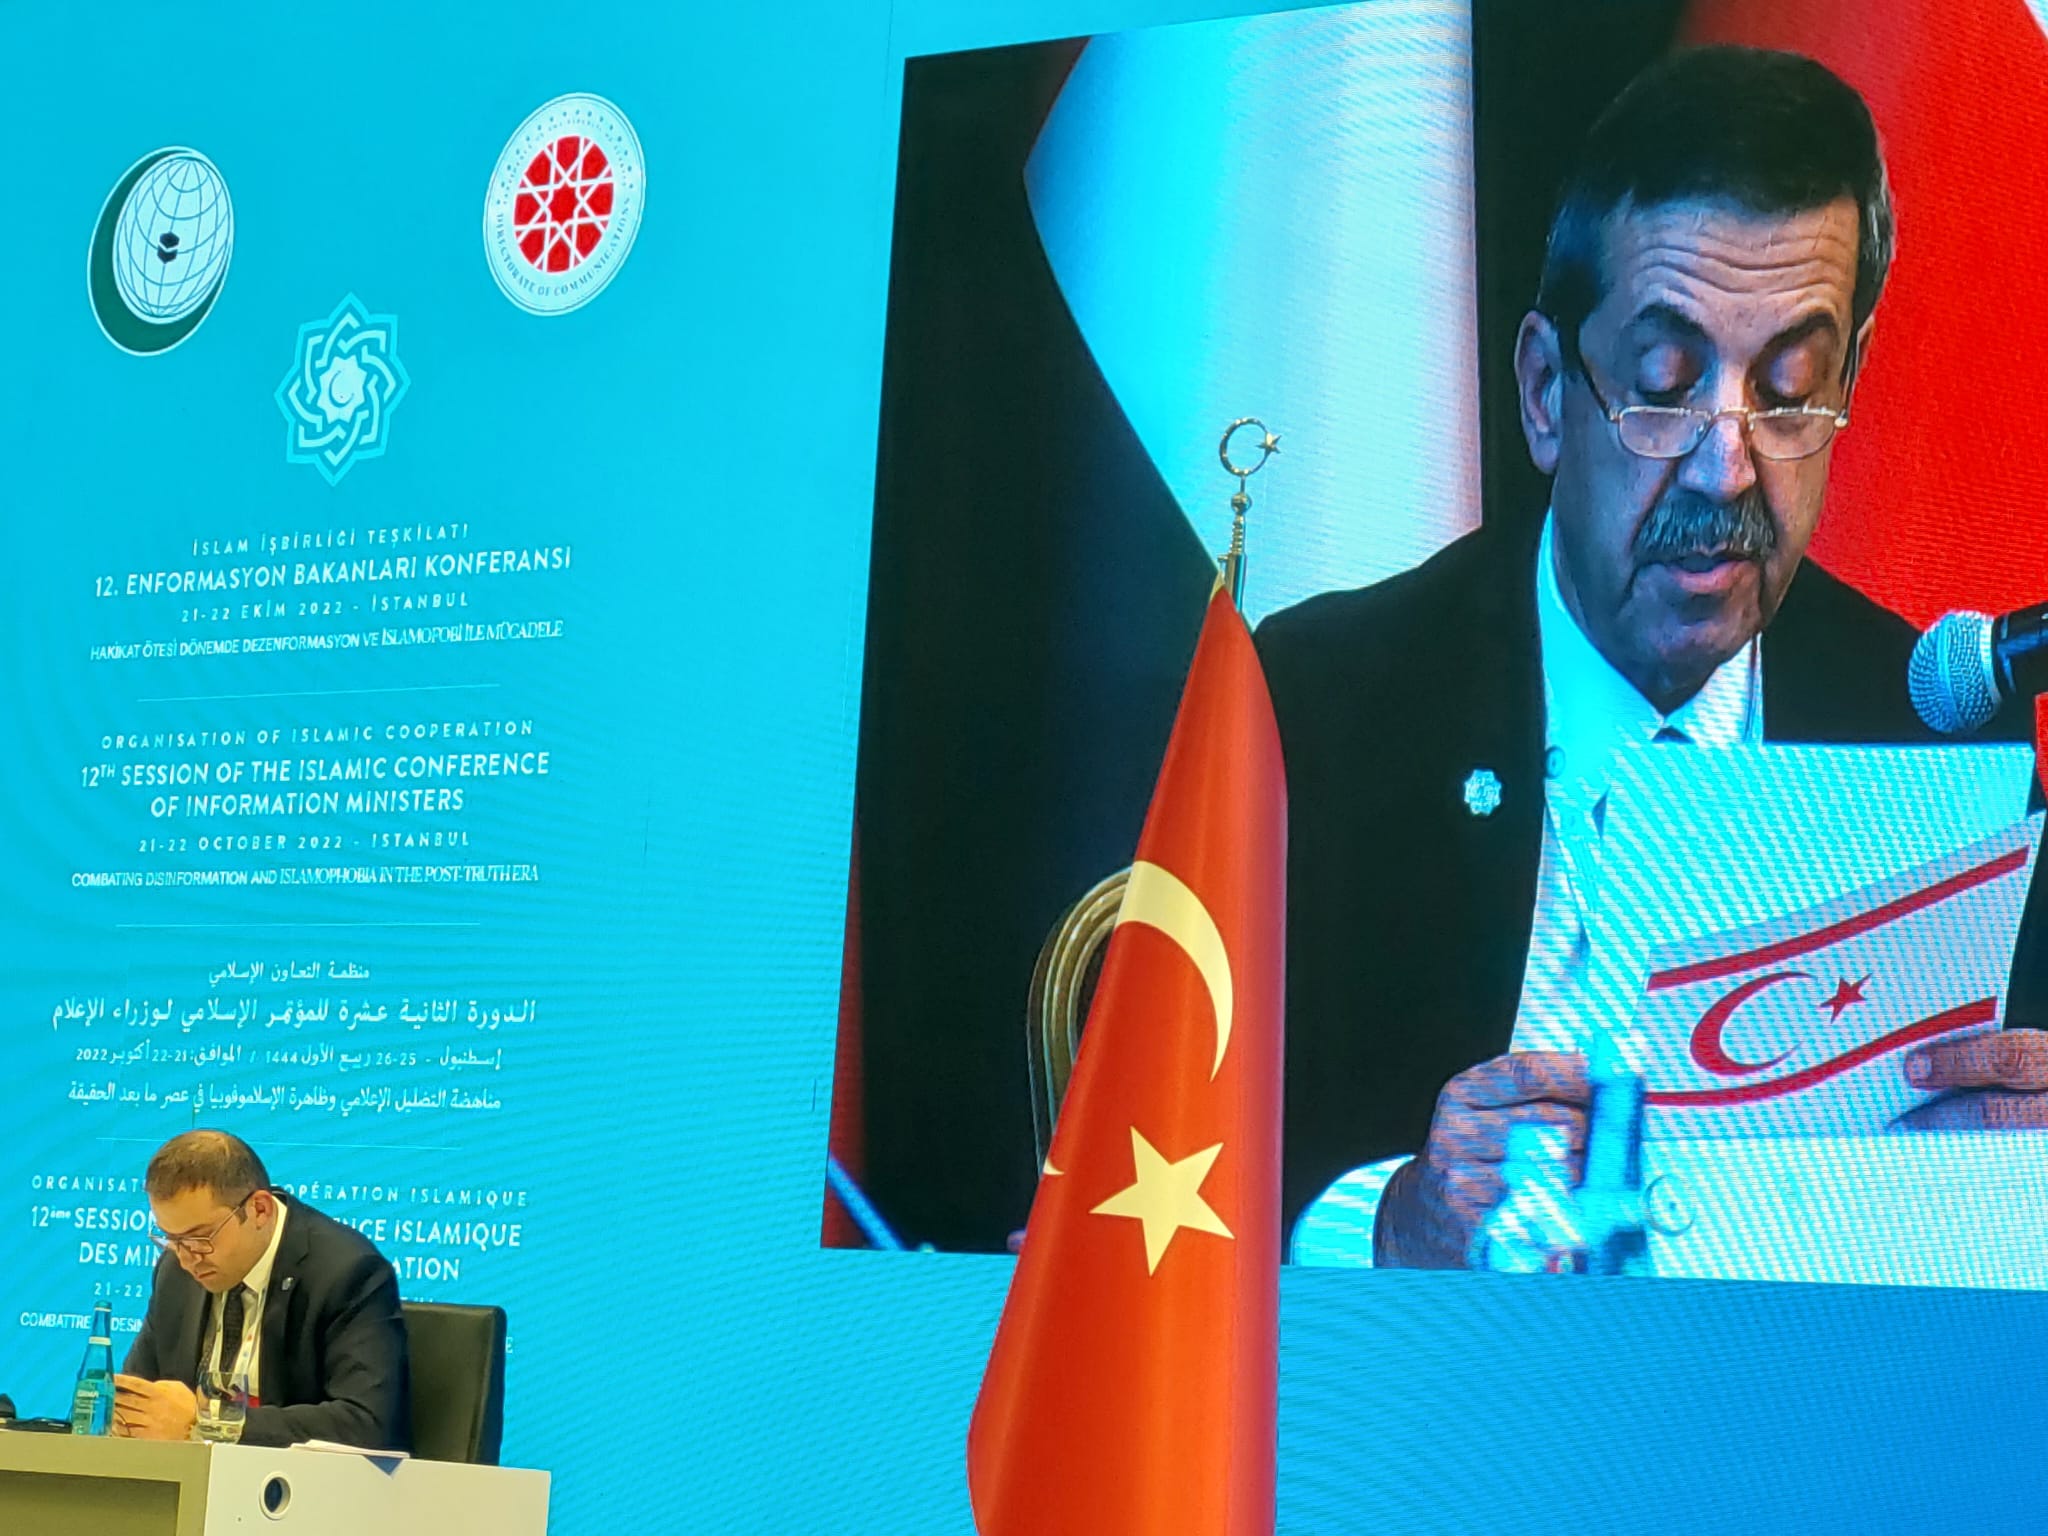 Ertuğruloğlu, İstanbul'da İİT 12. Enformasyon Bakanları Konferansı'na Katıldı